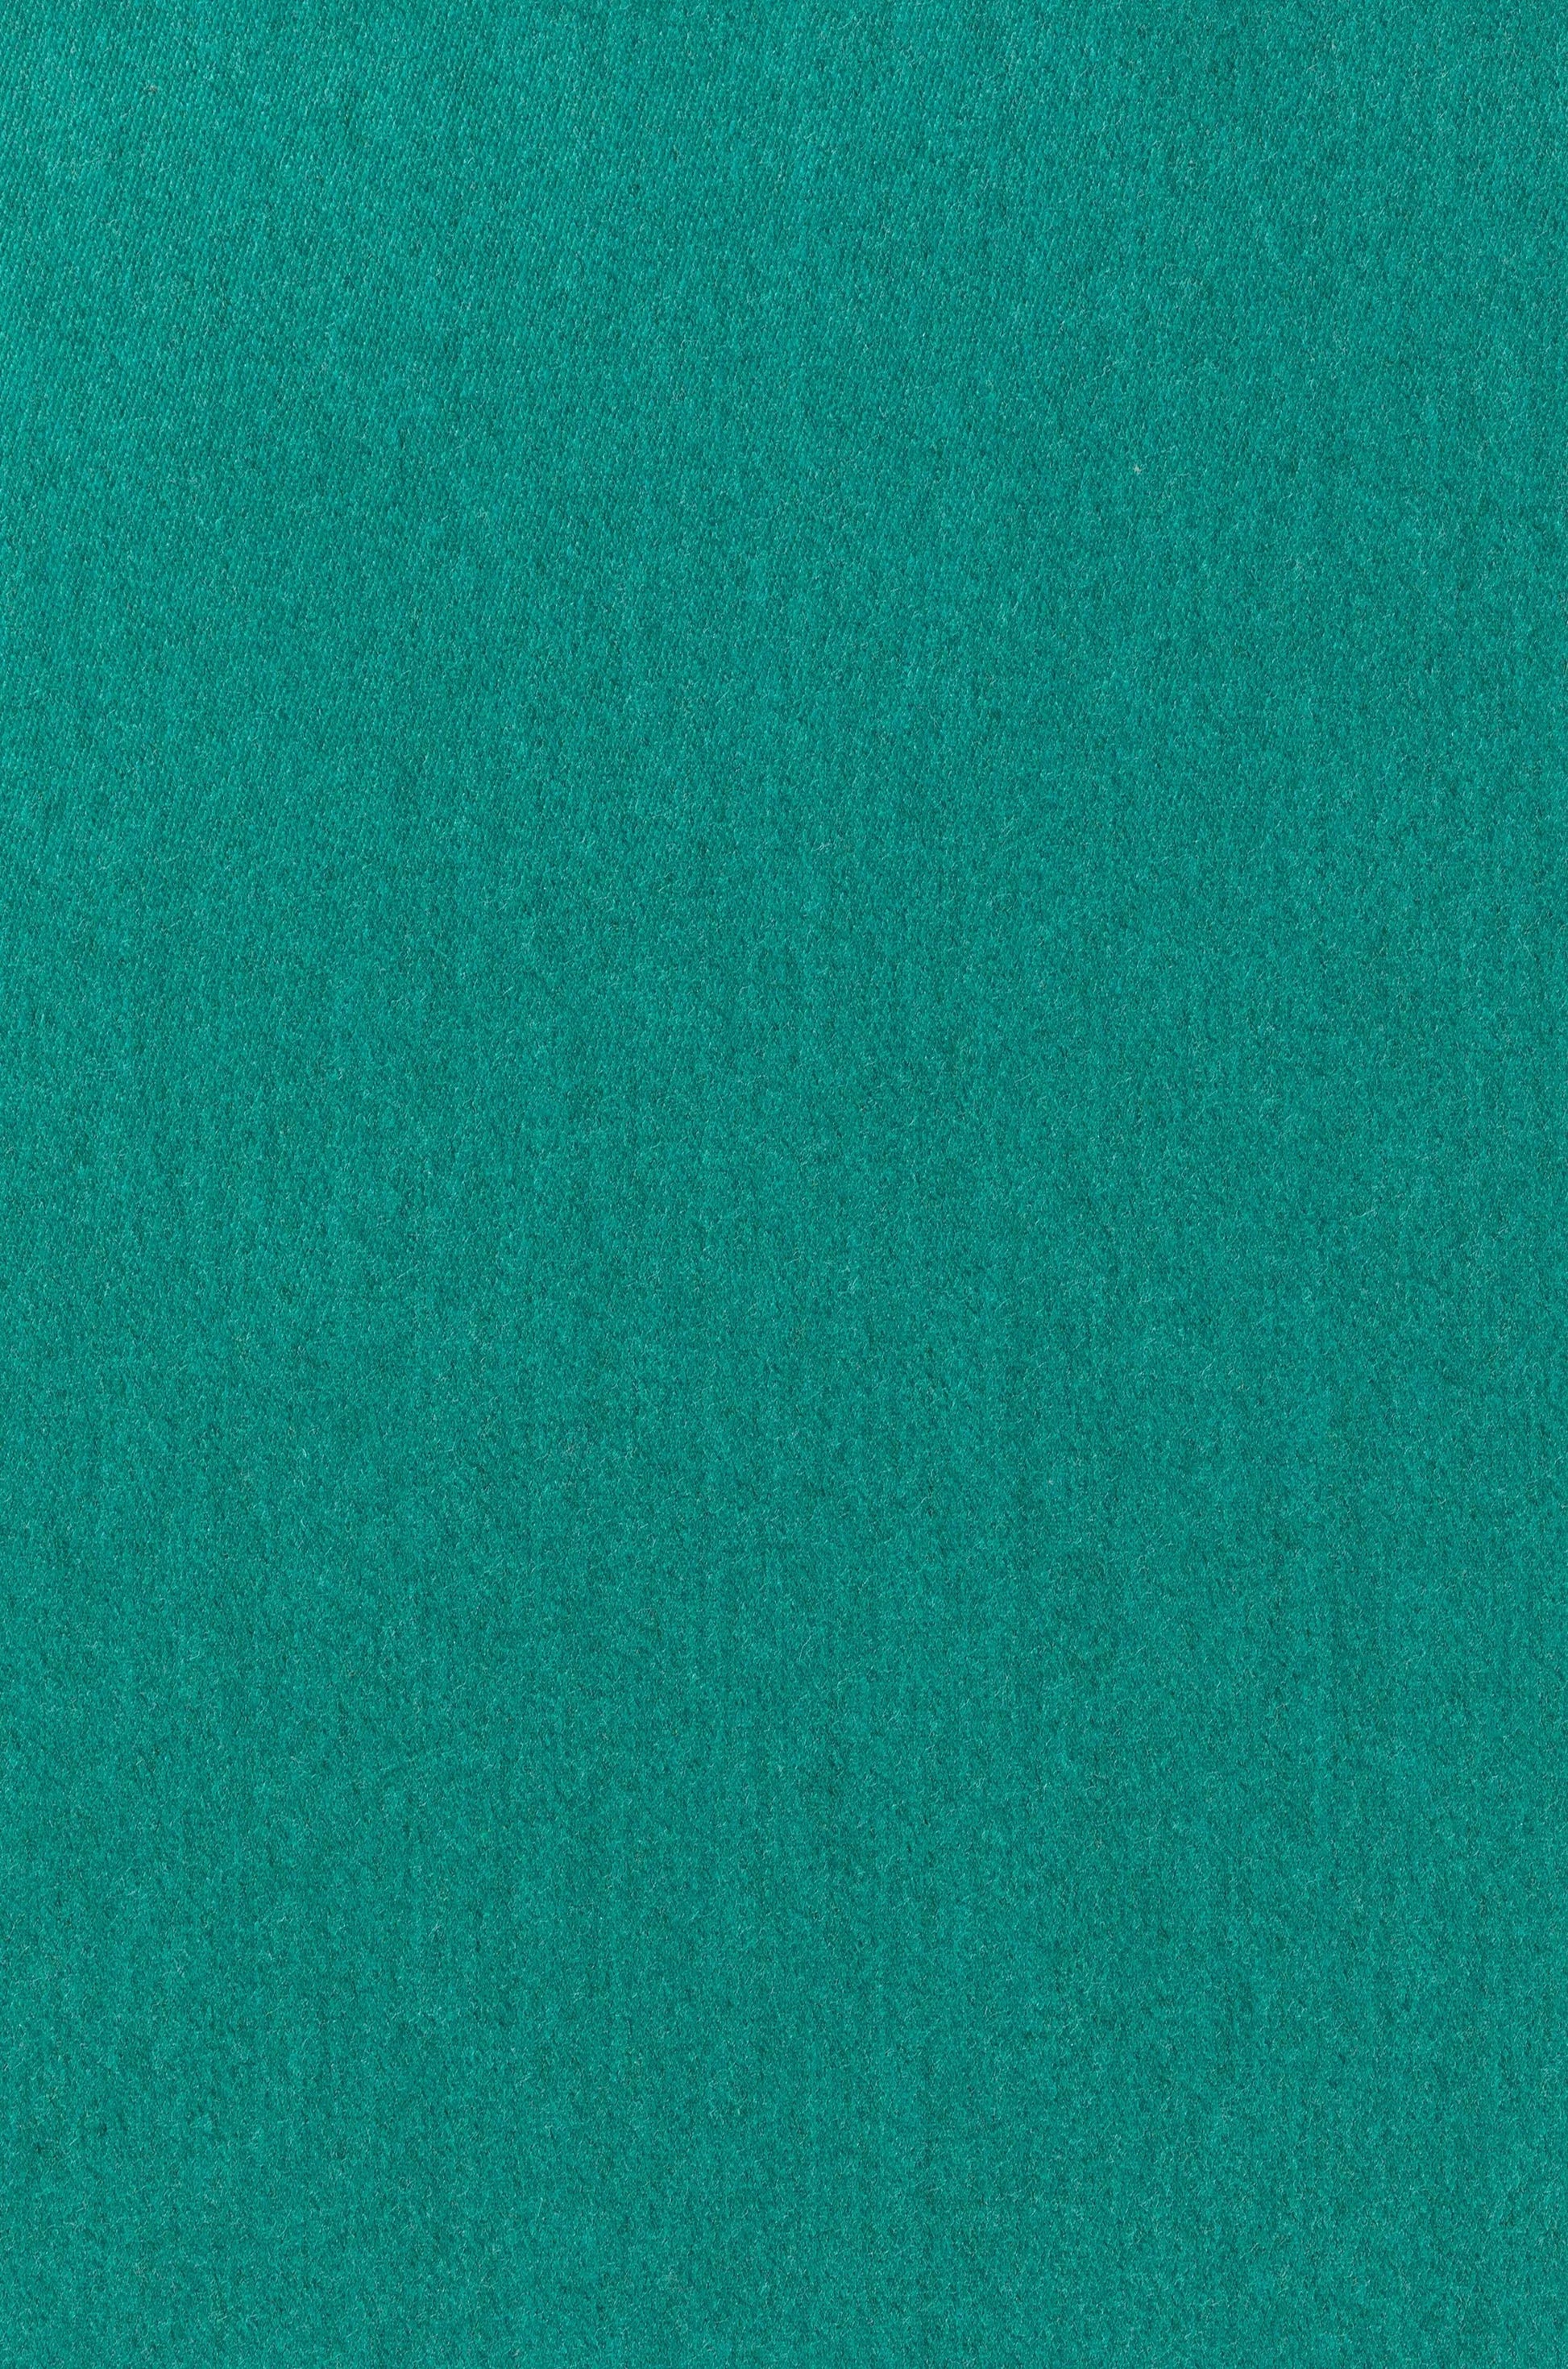 Tivoli Mélange Sateen Merino Wool Fabric in Kingfisher CD000526 UL321722